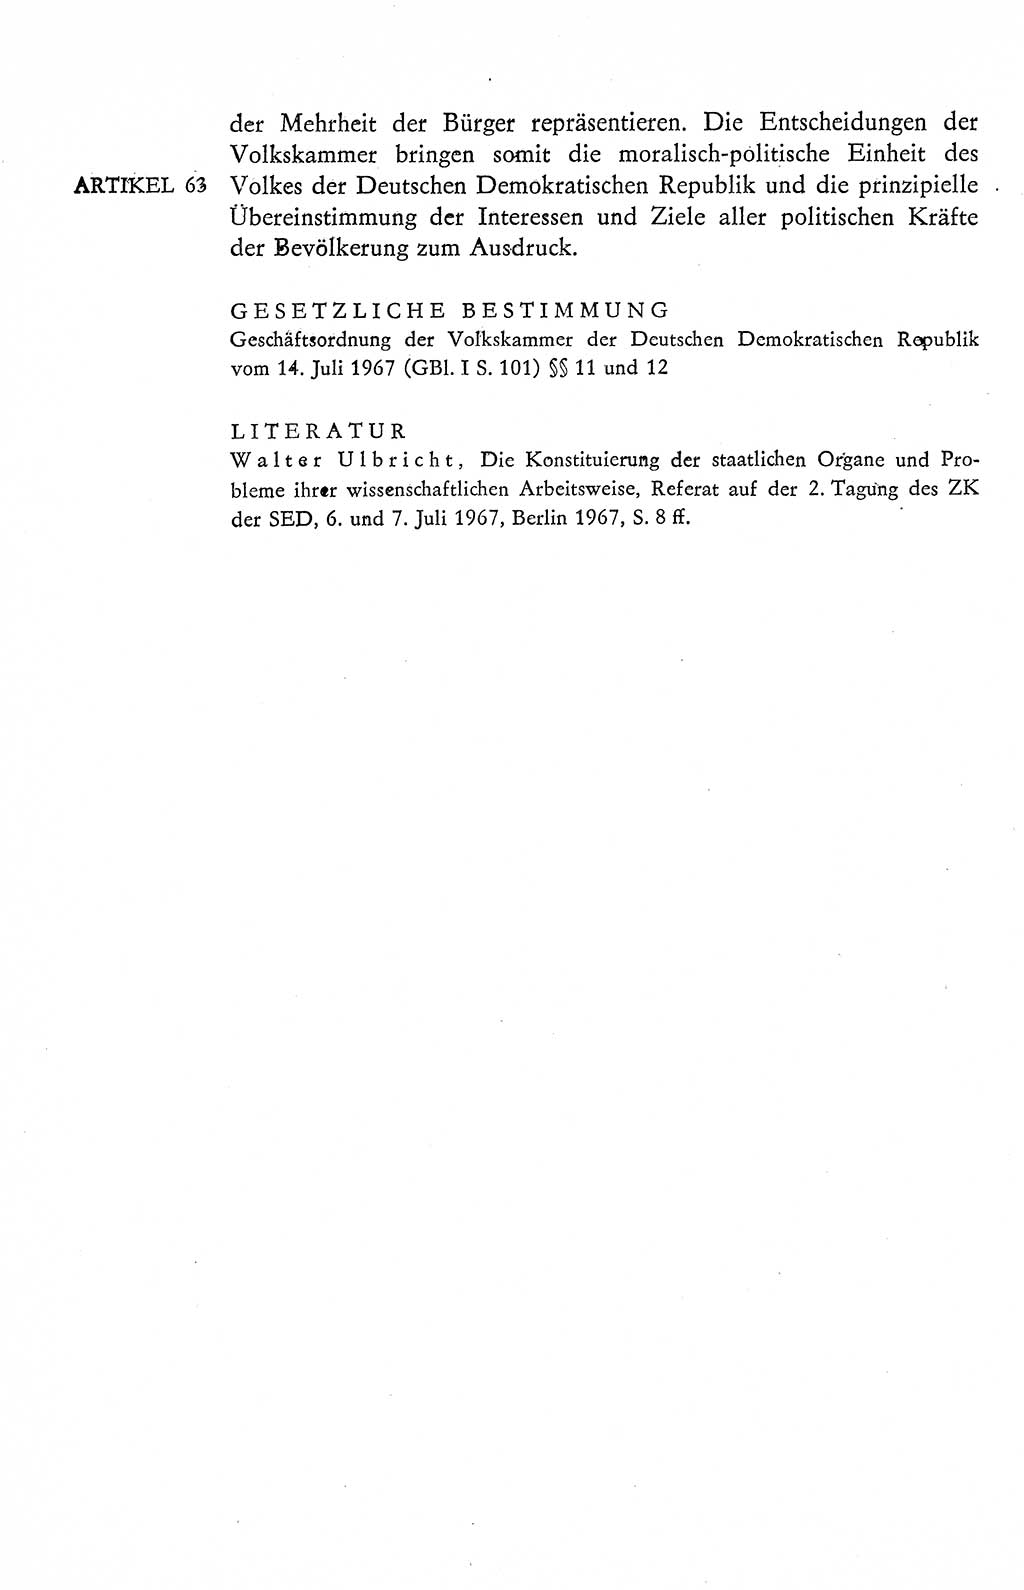 Verfassung der Deutschen Demokratischen Republik (DDR), Dokumente, Kommentar 1969, Band 2, Seite 292 (Verf. DDR Dok. Komm. 1969, Bd. 2, S. 292)